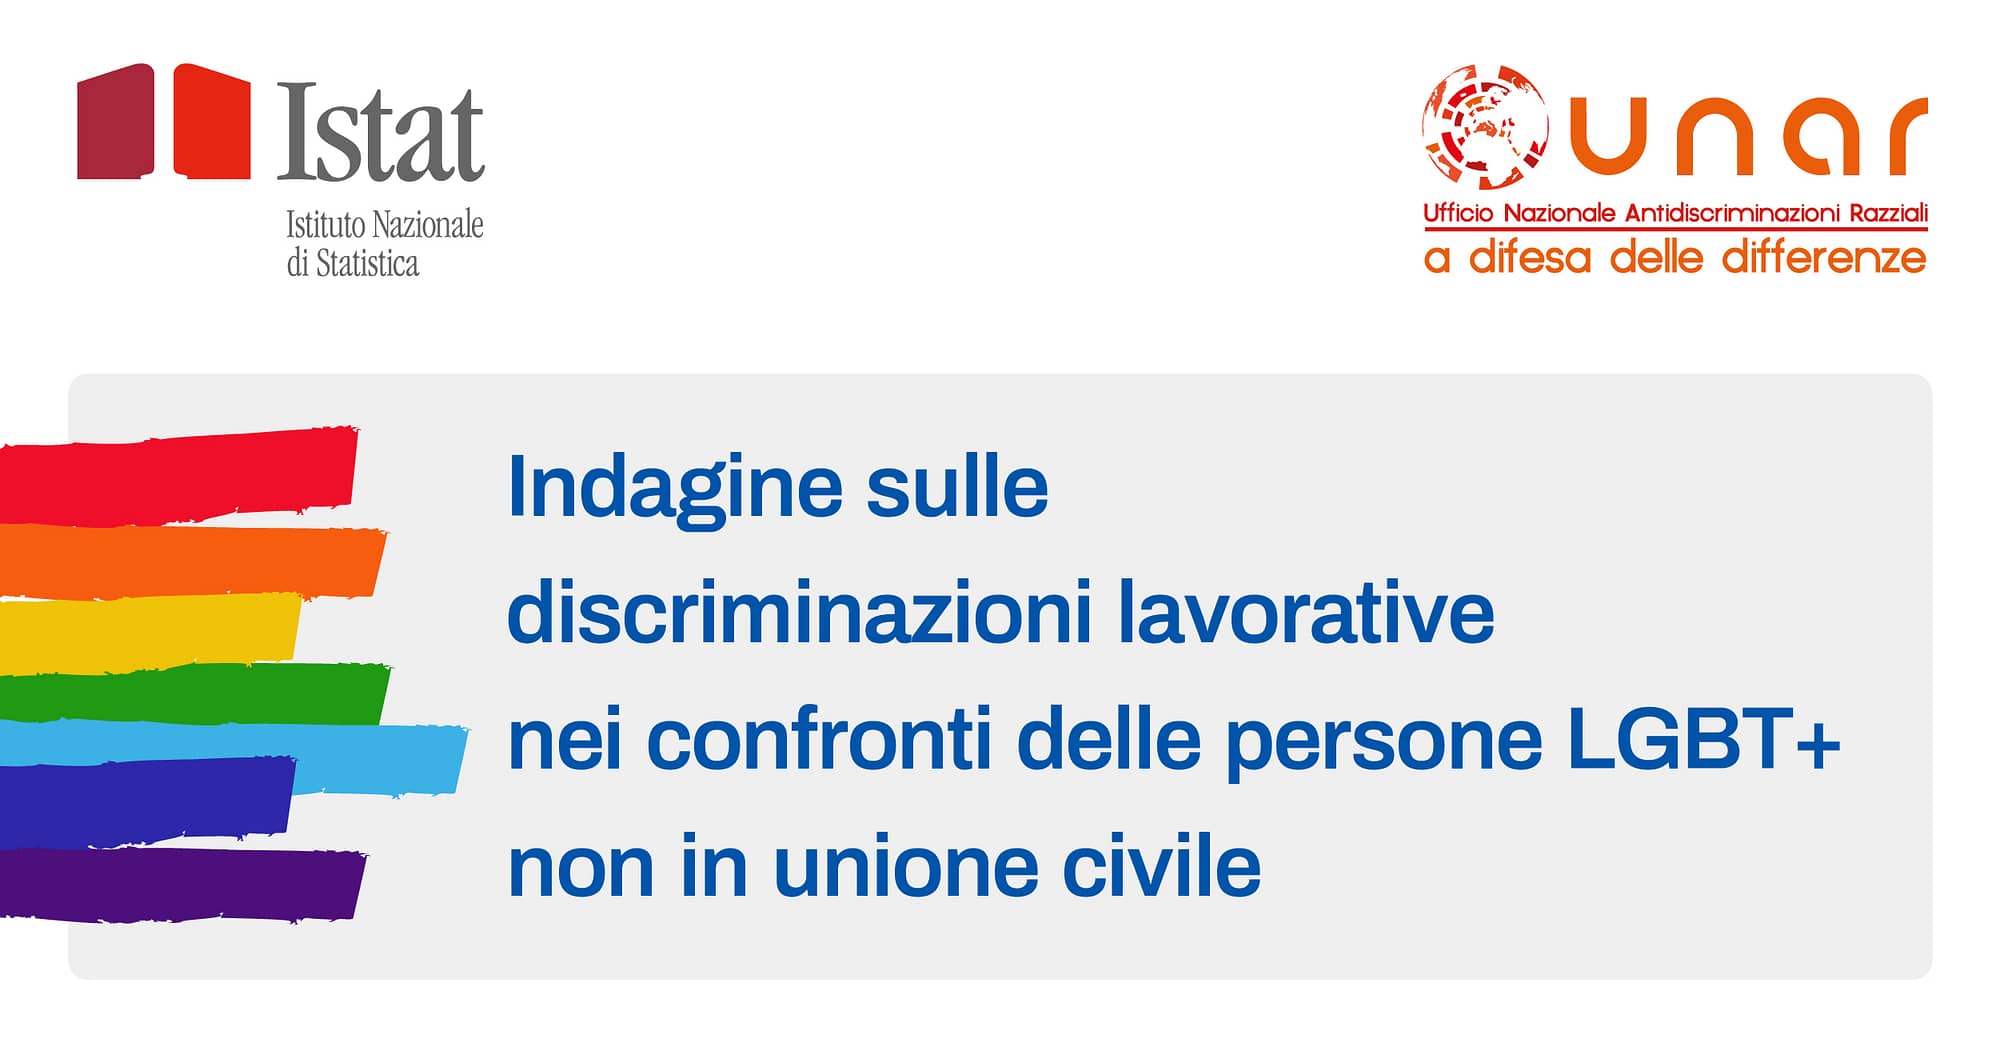 Indagine Istat sulle discriminazioni lavorative nei confronti delle persone LGBT+ (non in unione civile)